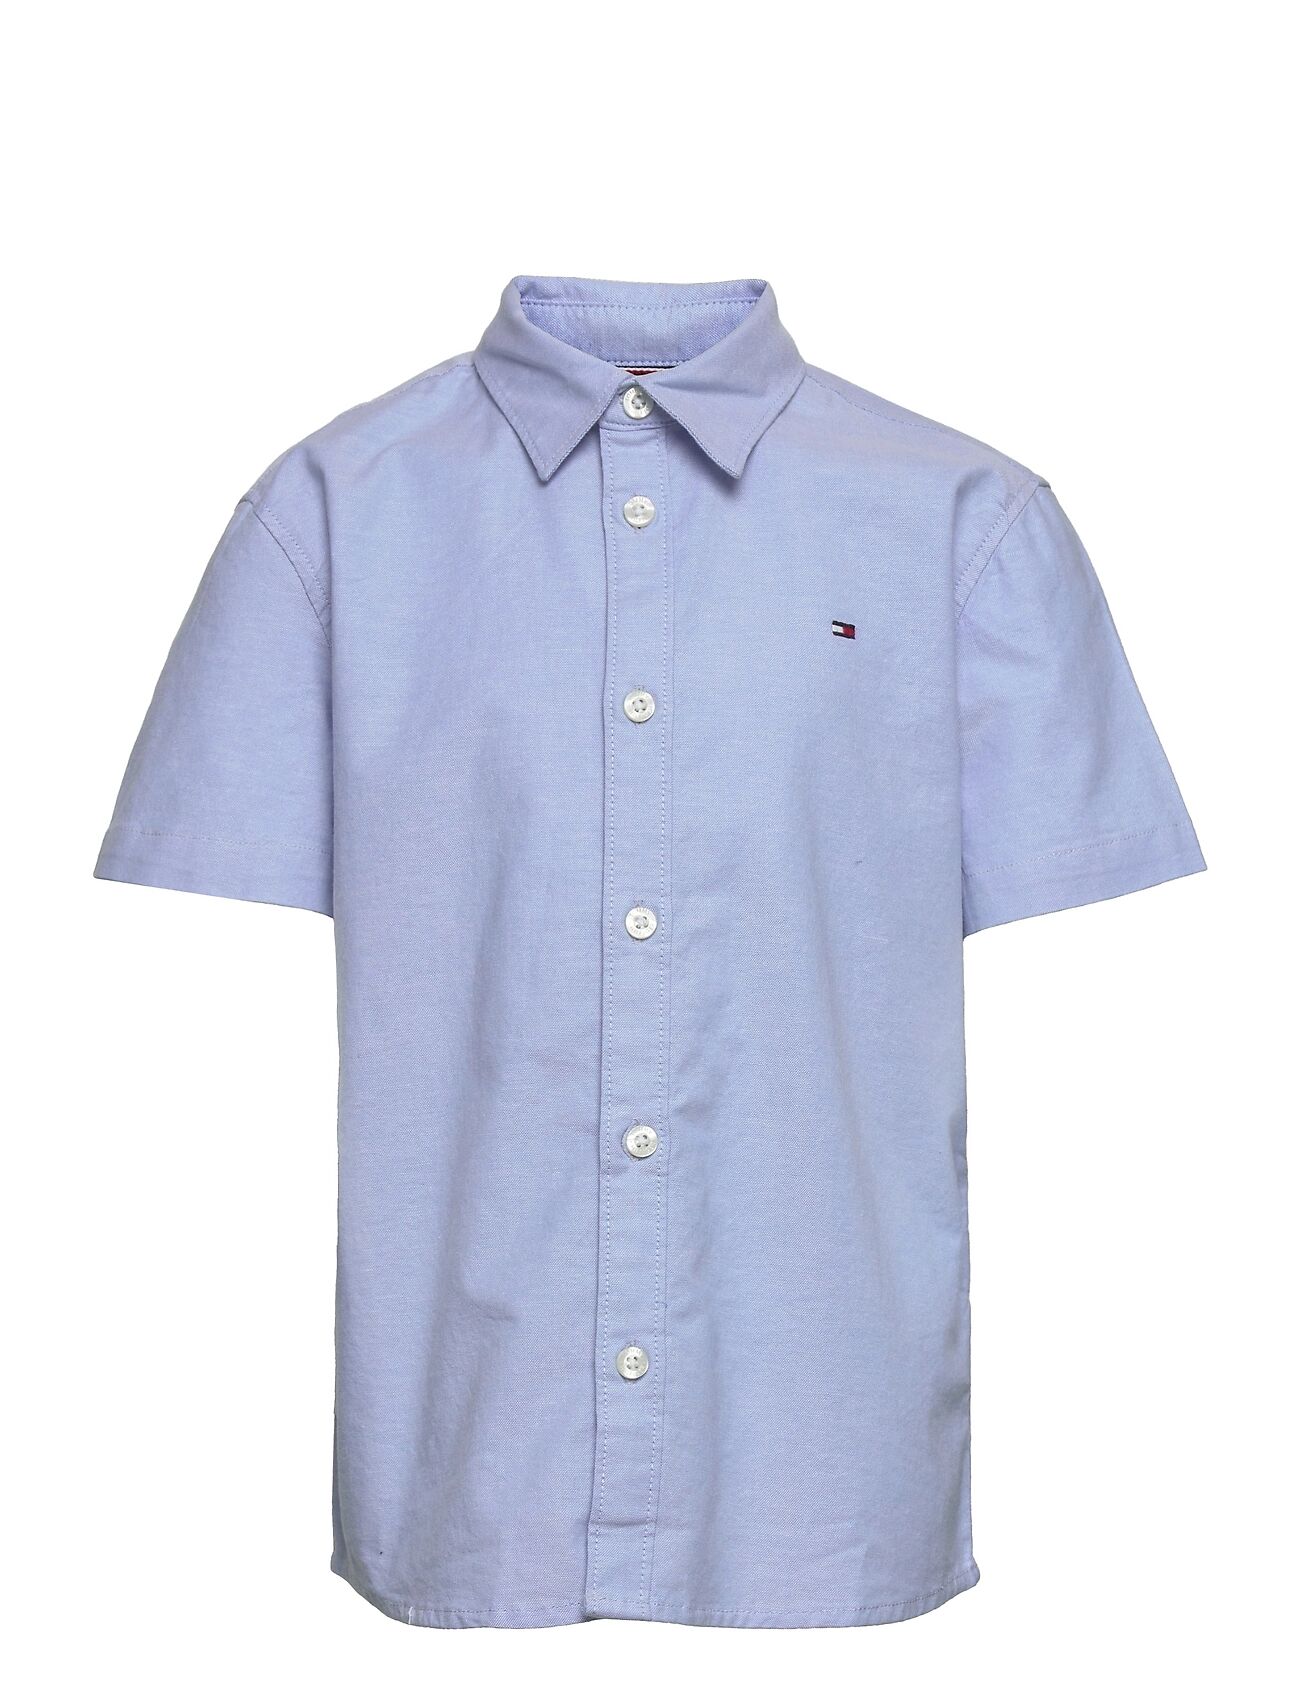 Tommy Hilfiger Stretch Oxford Shirt S/S Skjorte Blå Tommy Hilfiger